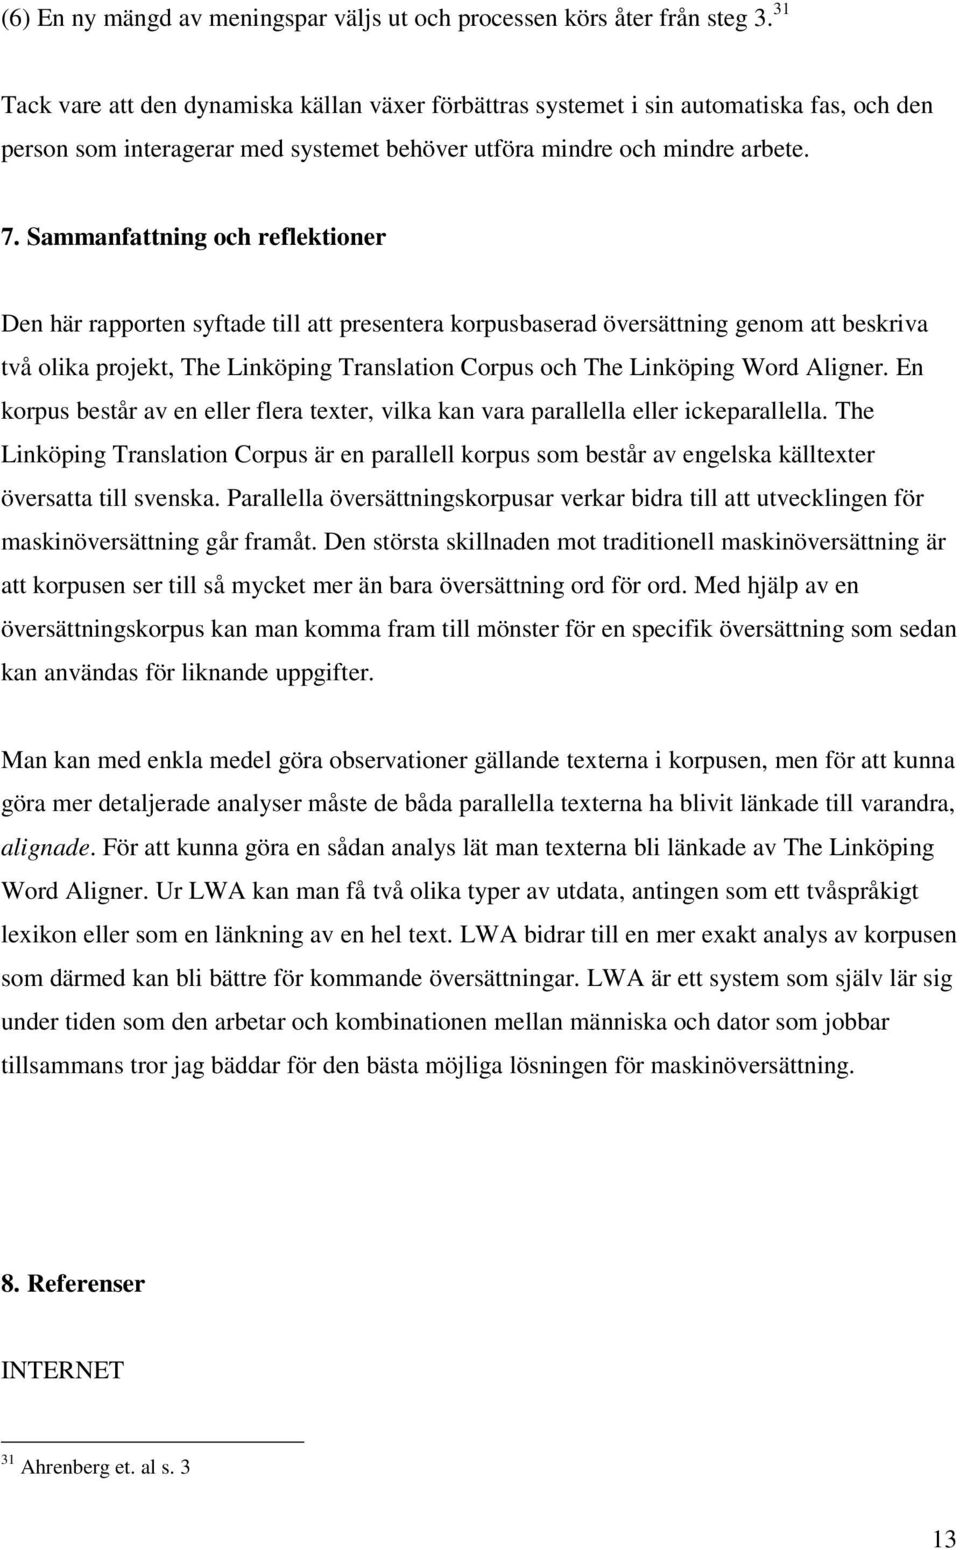 Sammanfattning och reflektioner Den här rapporten syftade till att presentera korpusbaserad översättning genom att beskriva två olika projekt, The Linköping Translation Corpus och The Linköping Word